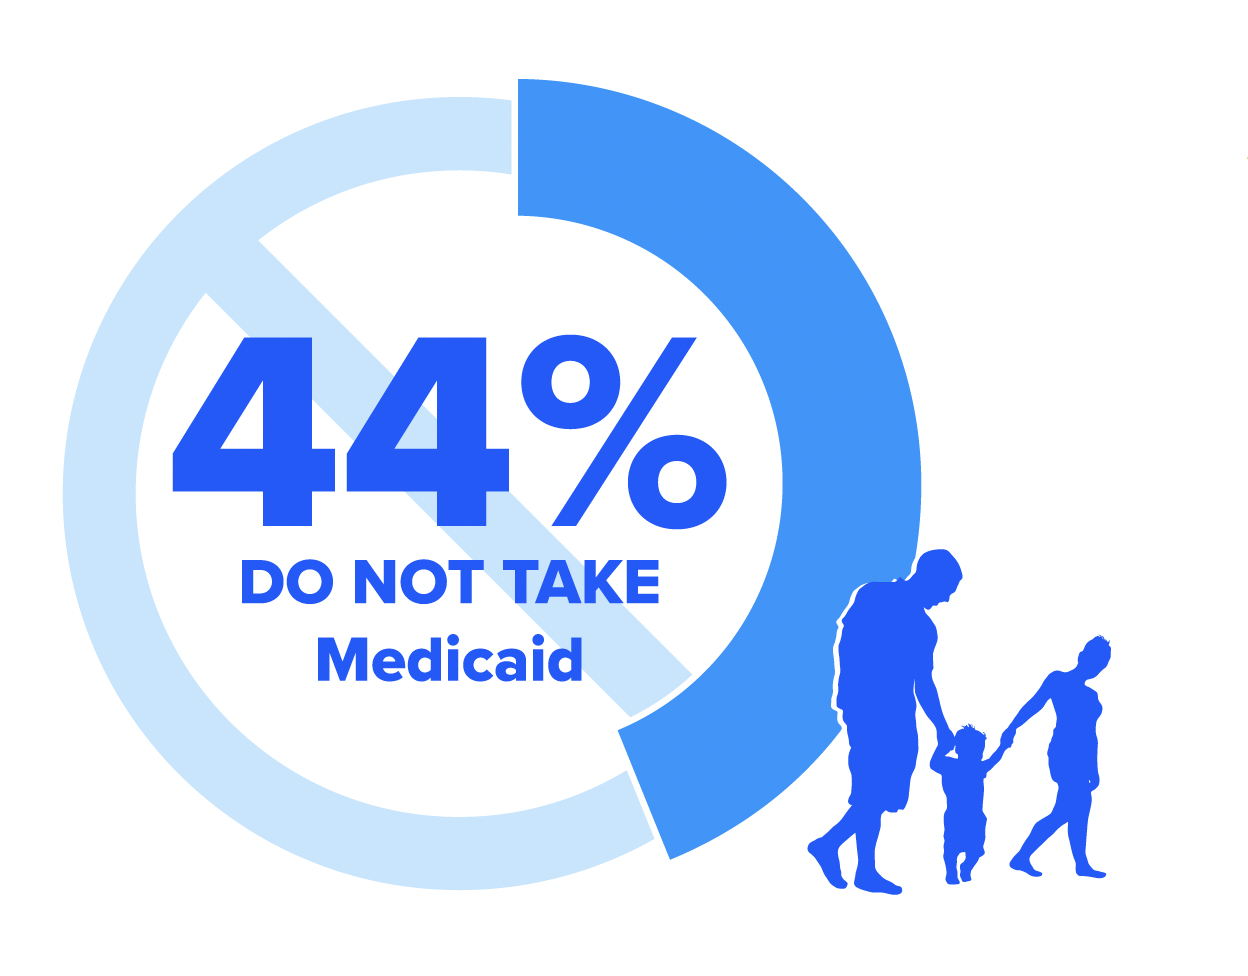 44% don't take medicaid